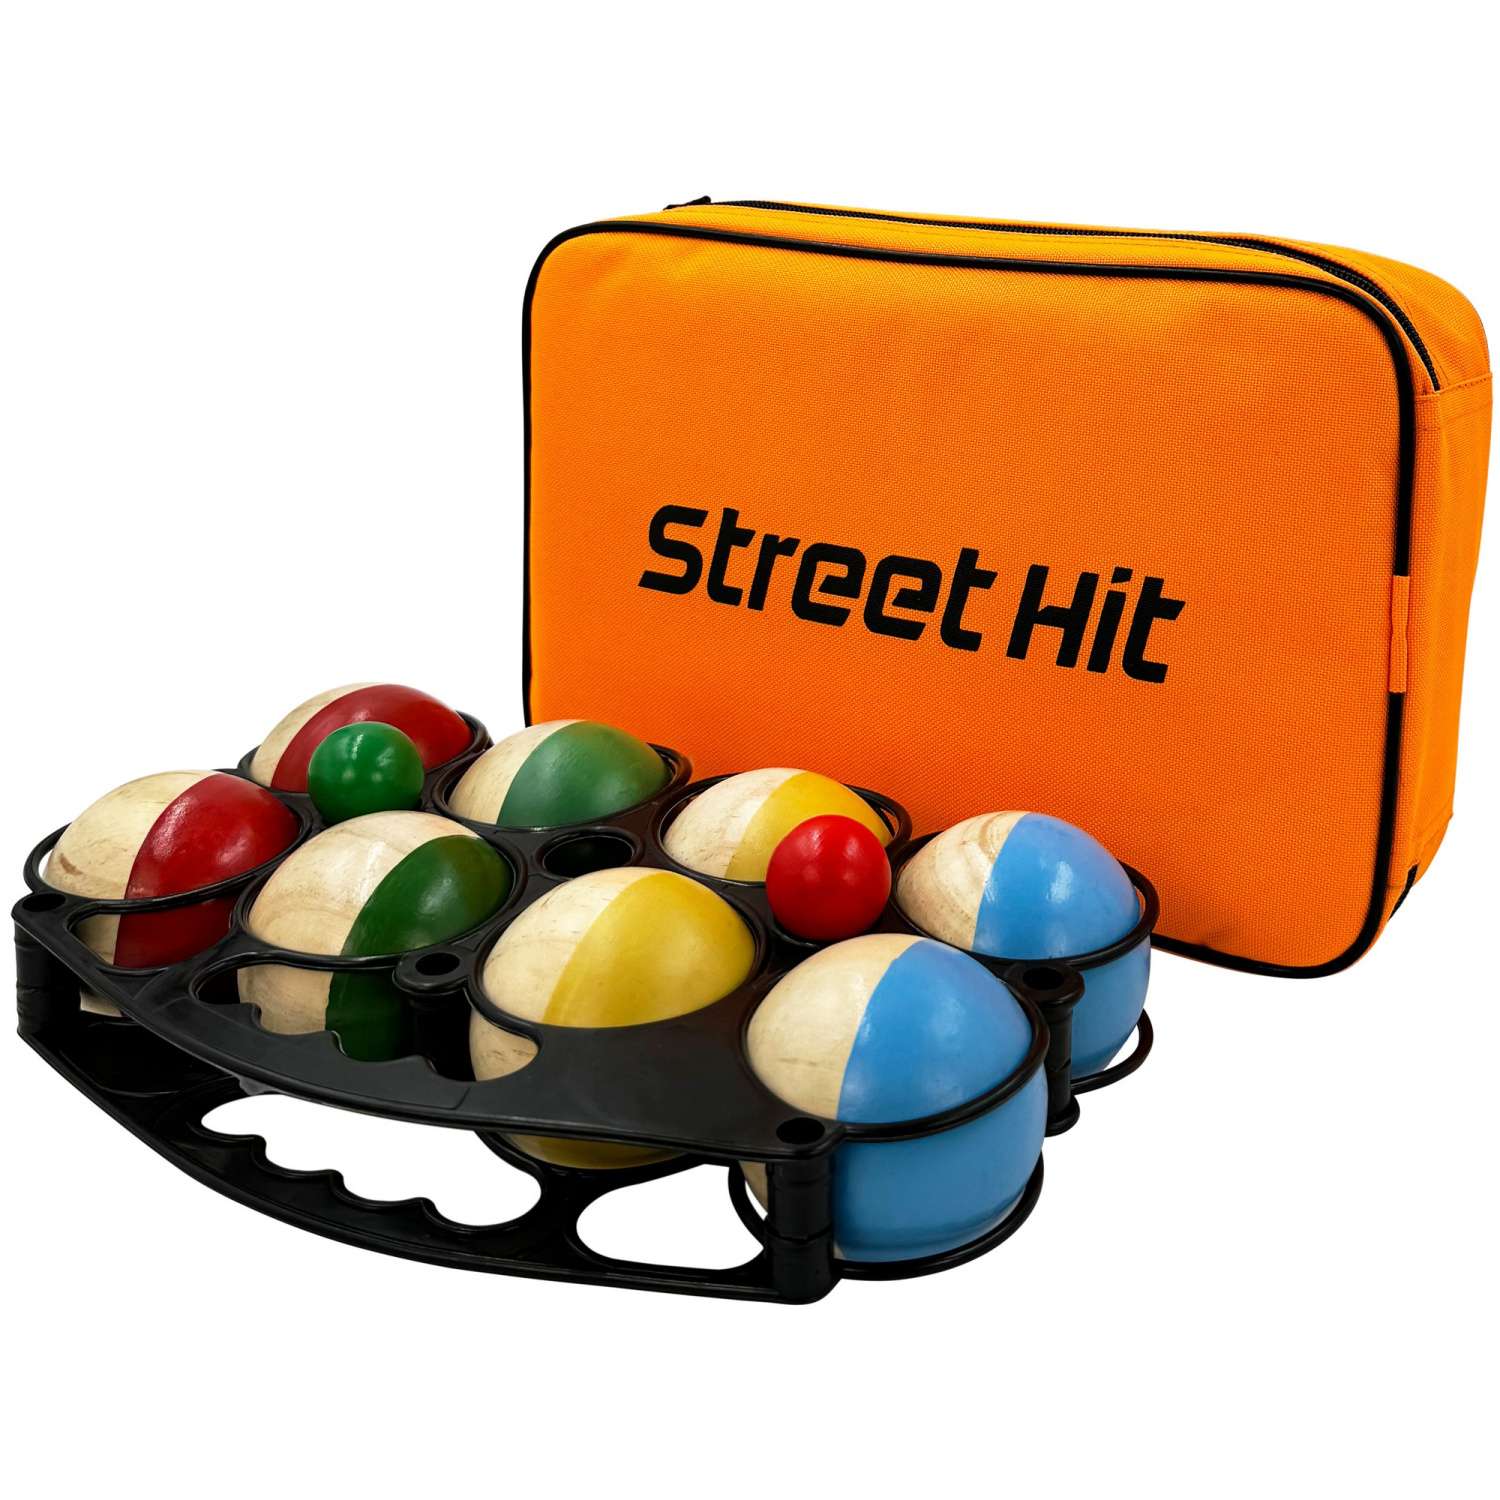 Набор для игры Street Hit Петанк 8 шаров из дерева красный синий зеленый желтый - фото 1